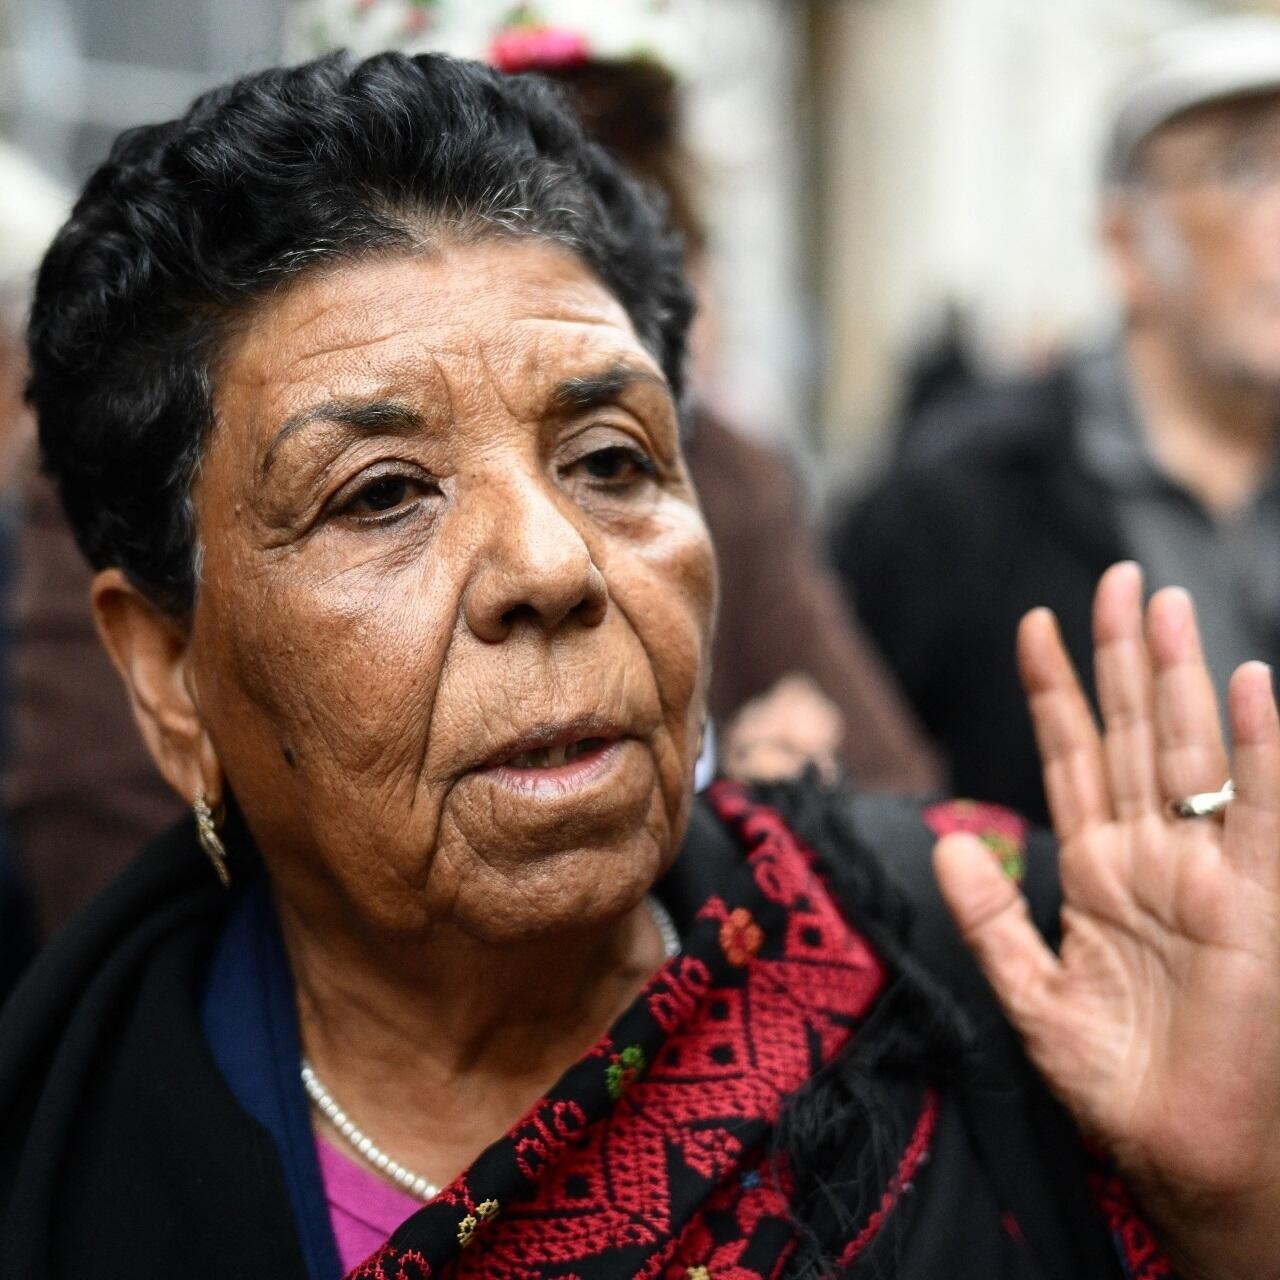 شاهد الفيديو... الناشطة الفلسطينية مريم أبو دقة تكشف عهر فرنسا وعنصريتها